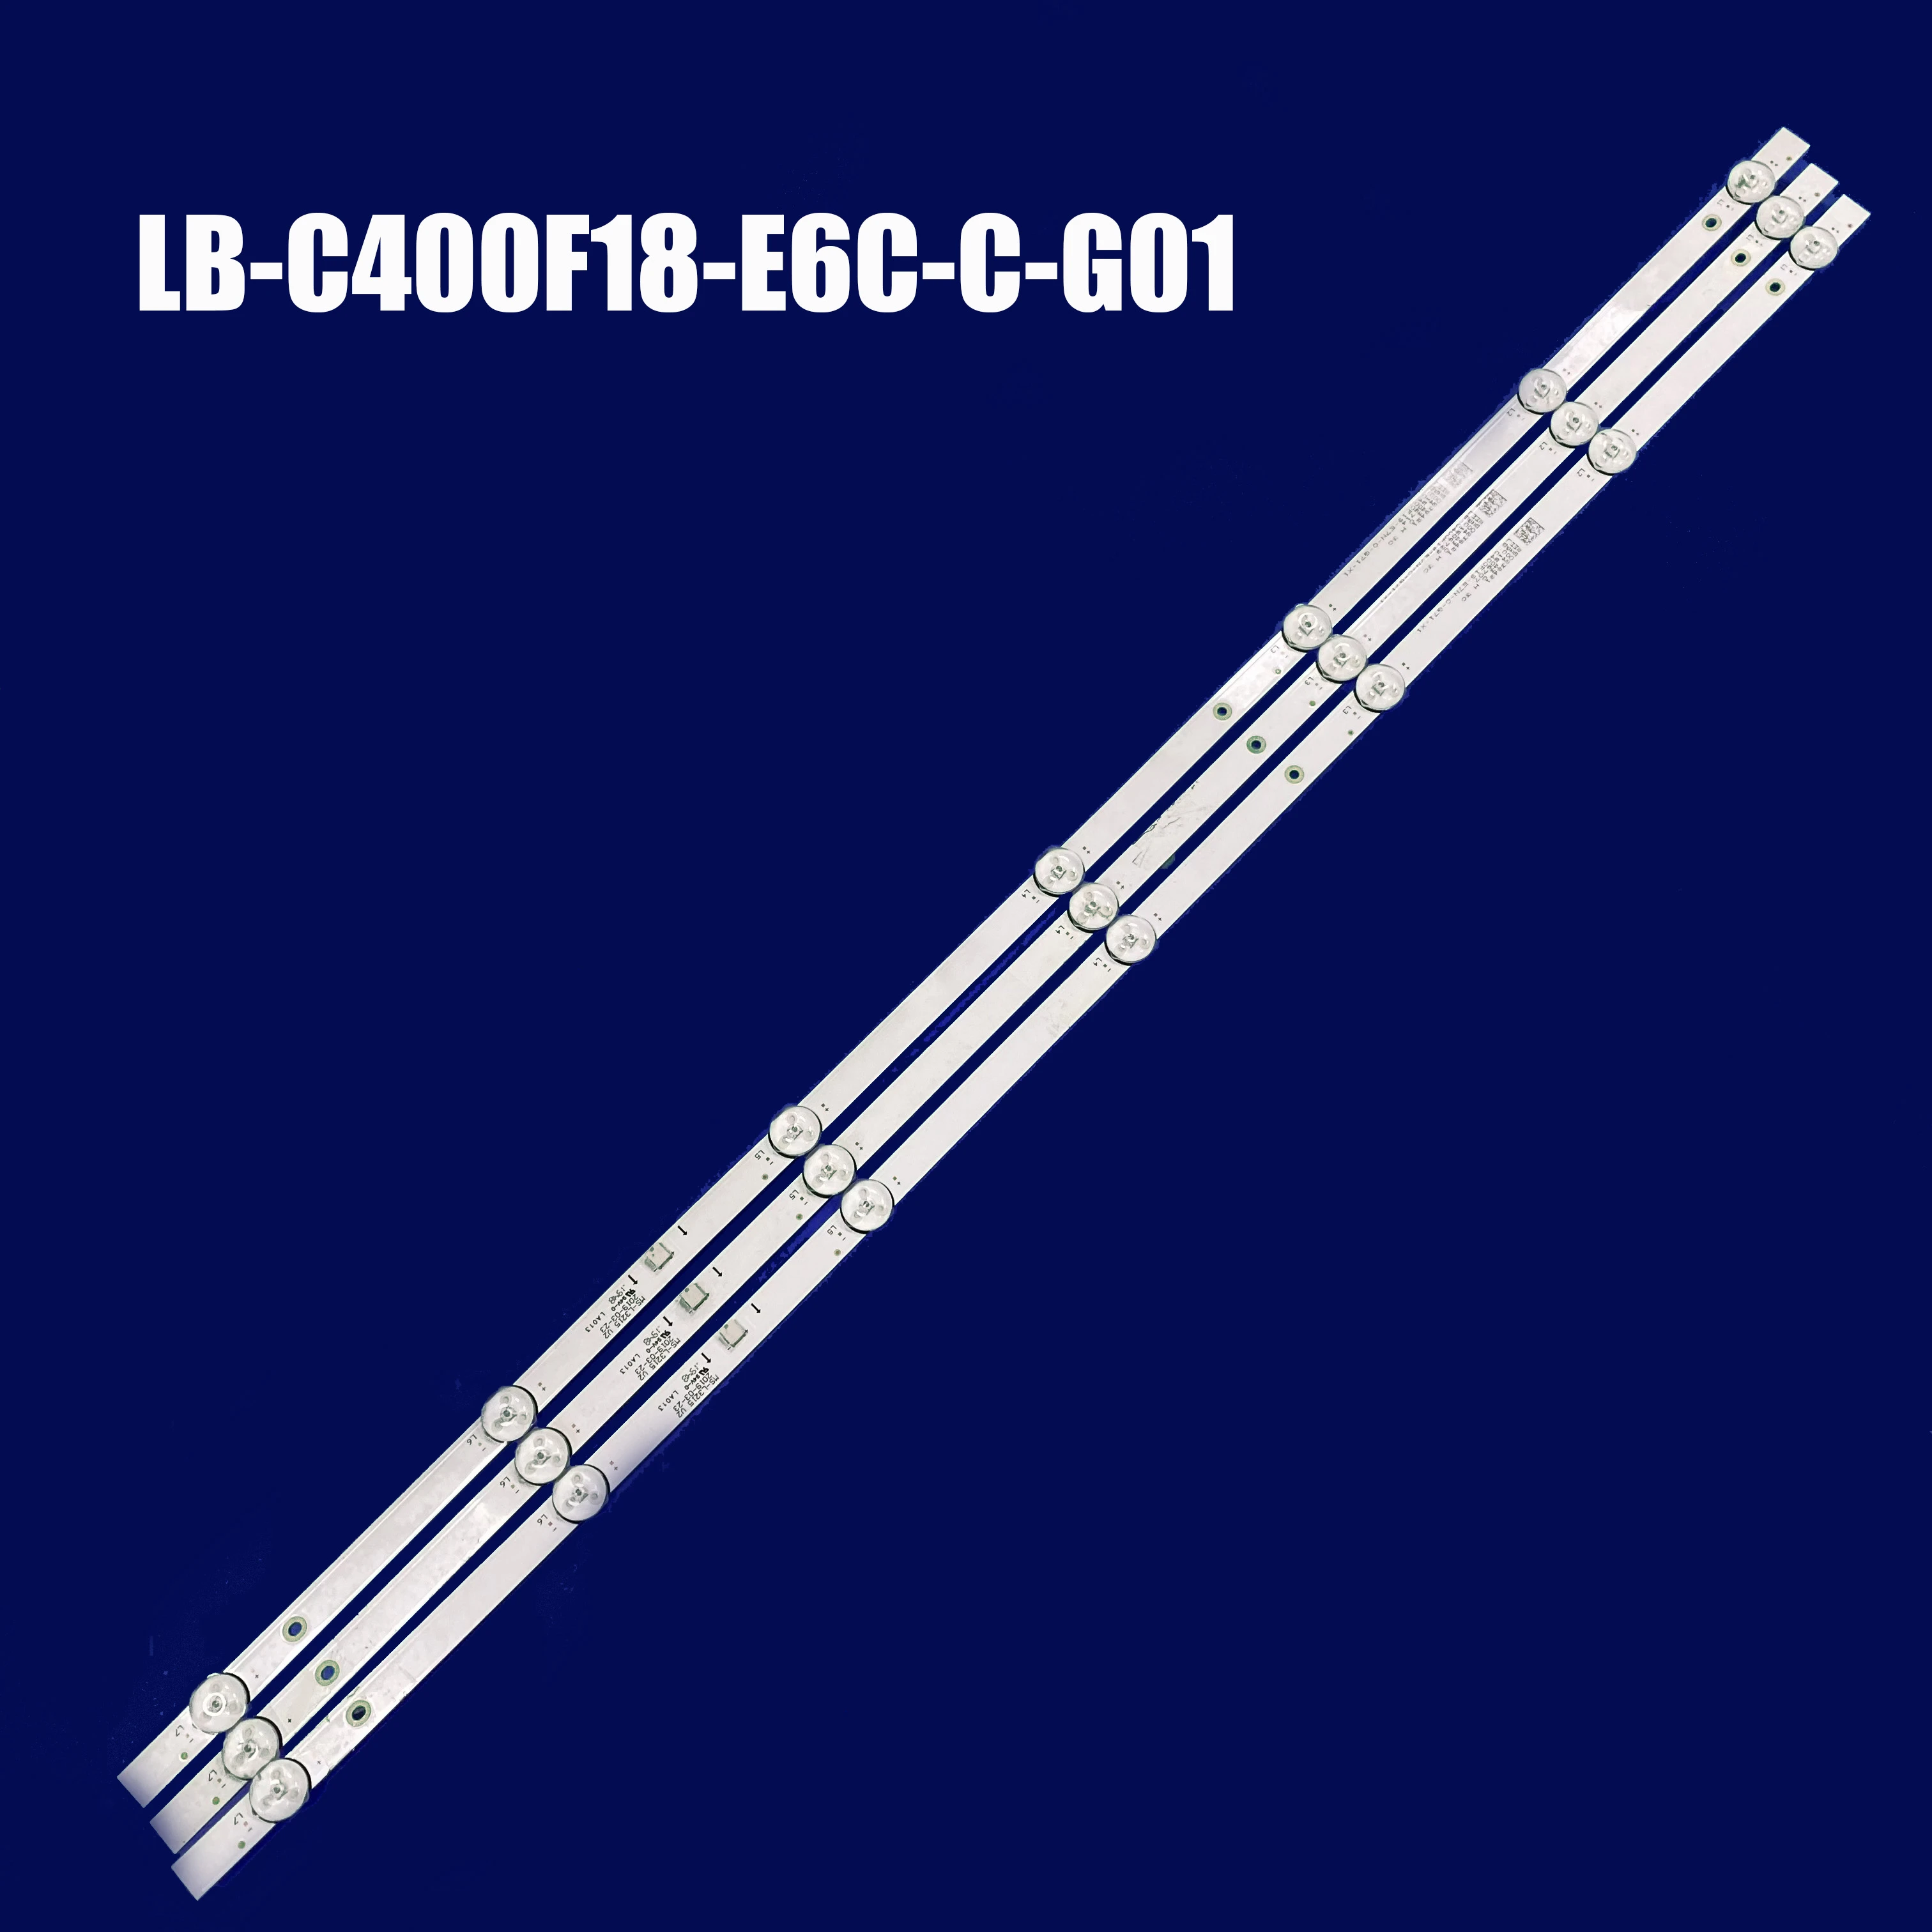 LB-C400F18-E6C-C-G01-XRD1 CRH-ZG40G5SP30300703913 Rev1.0 BBK 40LEM-1052/FTS2C  F40D7300C  STV-LC40ST0075F LB-C400F18-E6C-C-G01 M backlit panel